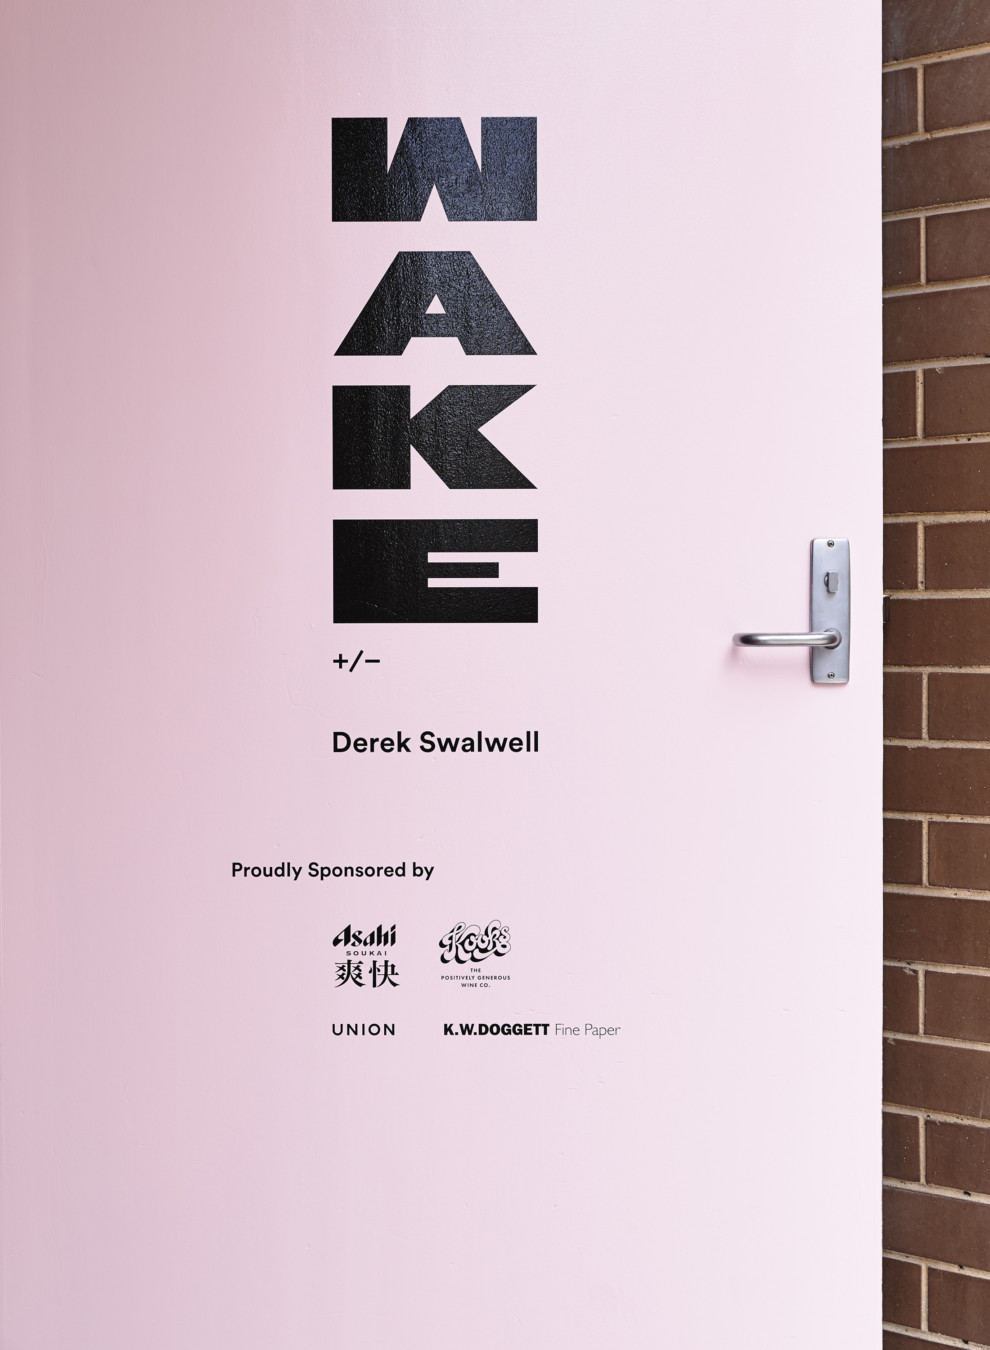 Derek Swalwell - Exhibition Signage